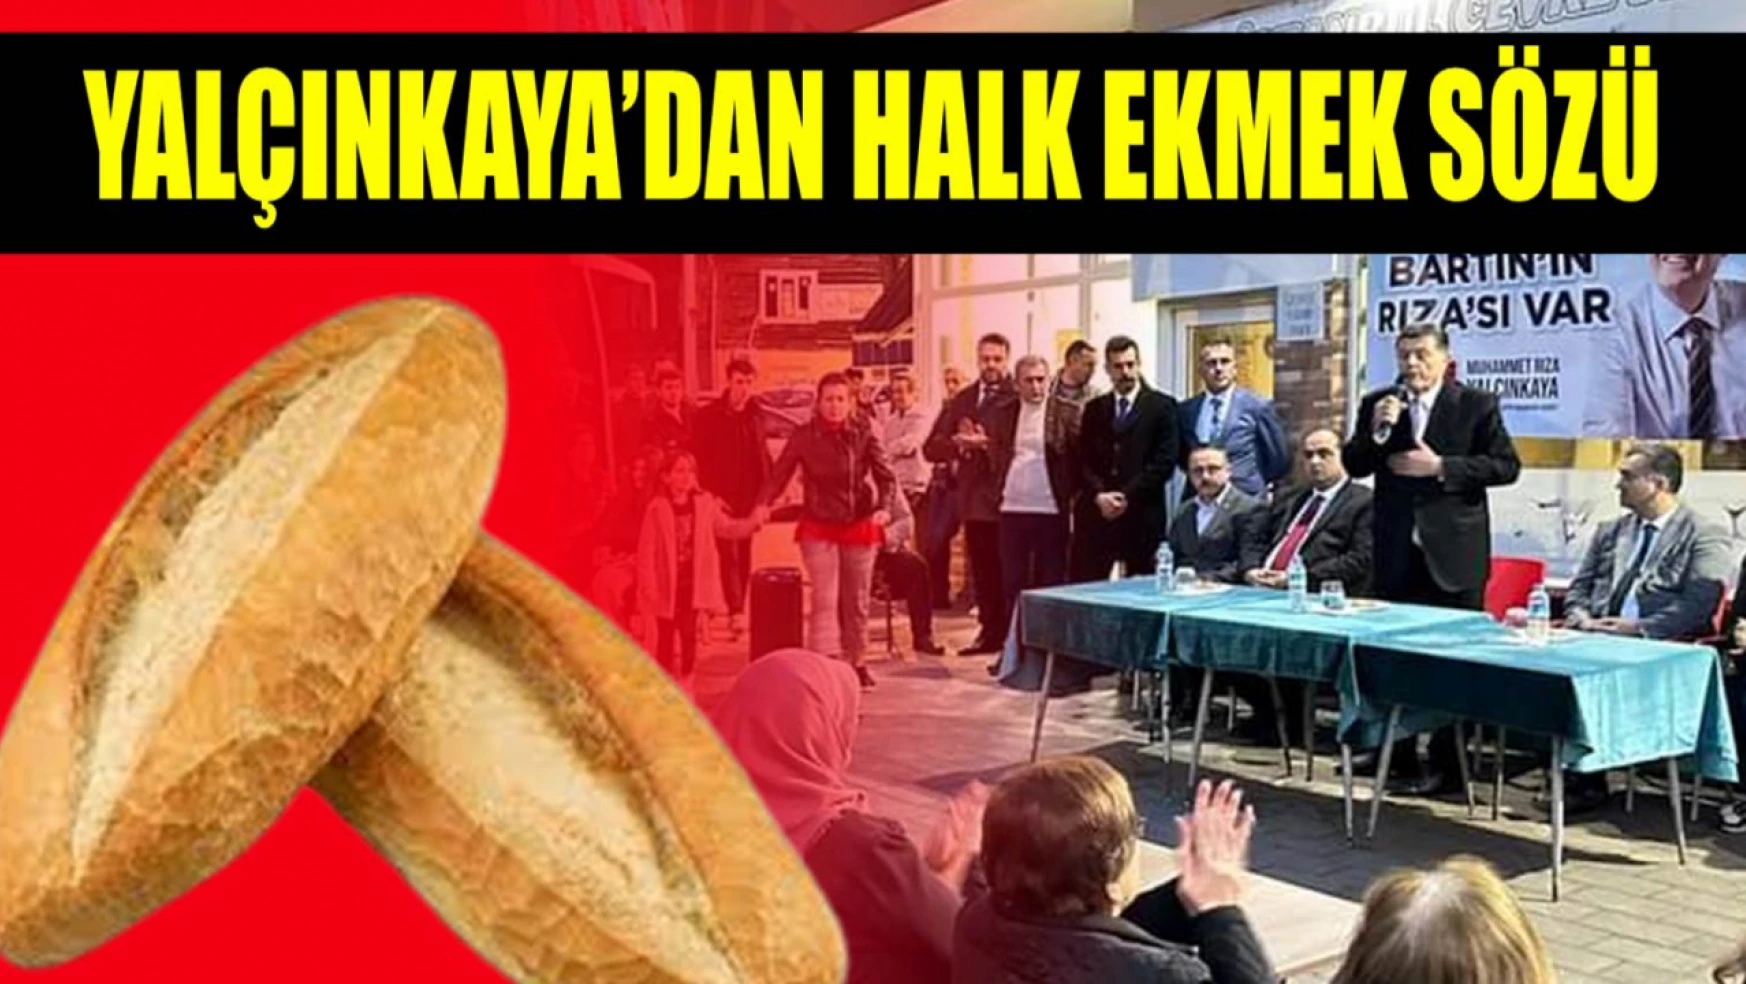 Yalçınkaya'dan halk ekmek fabrikası sözü